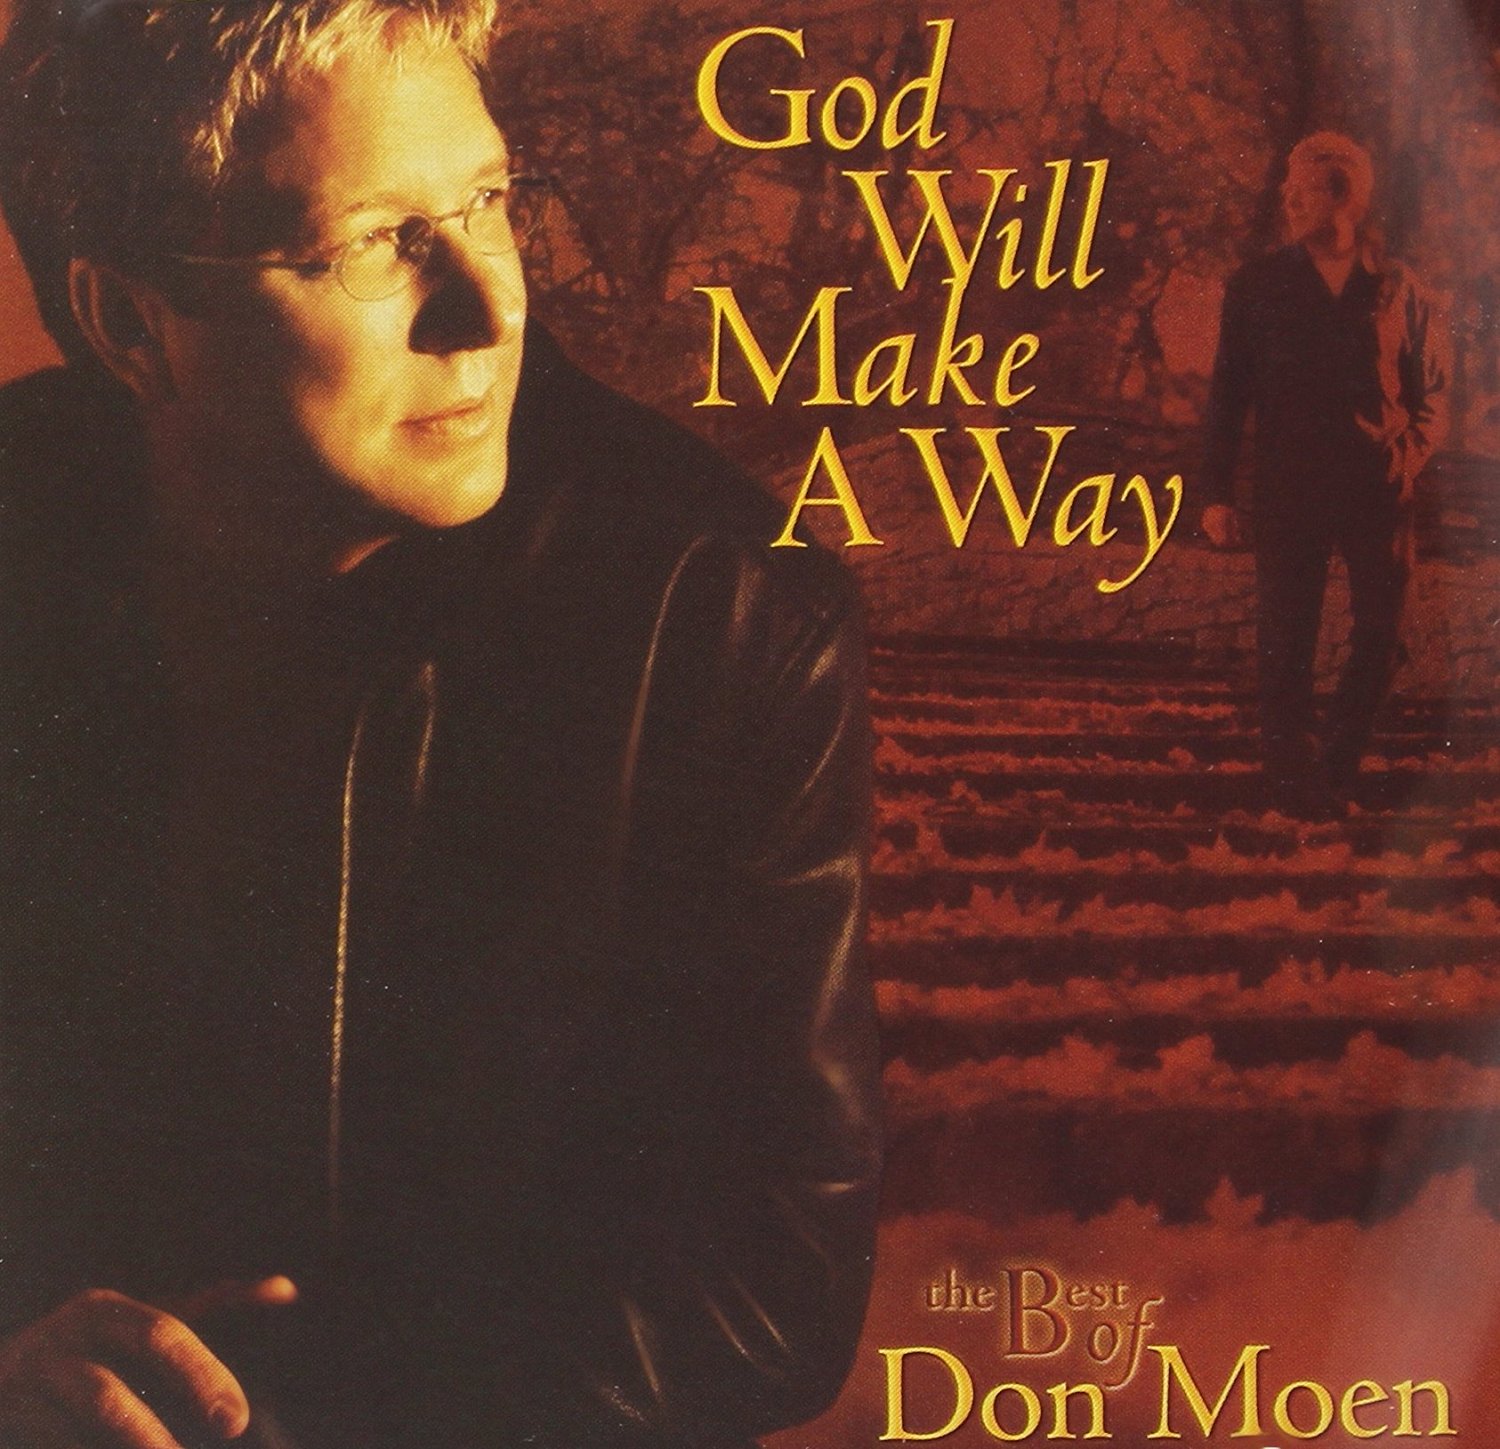 Don Moen - The Best of Don Moen - God Will Make a Way (CD+DVD)